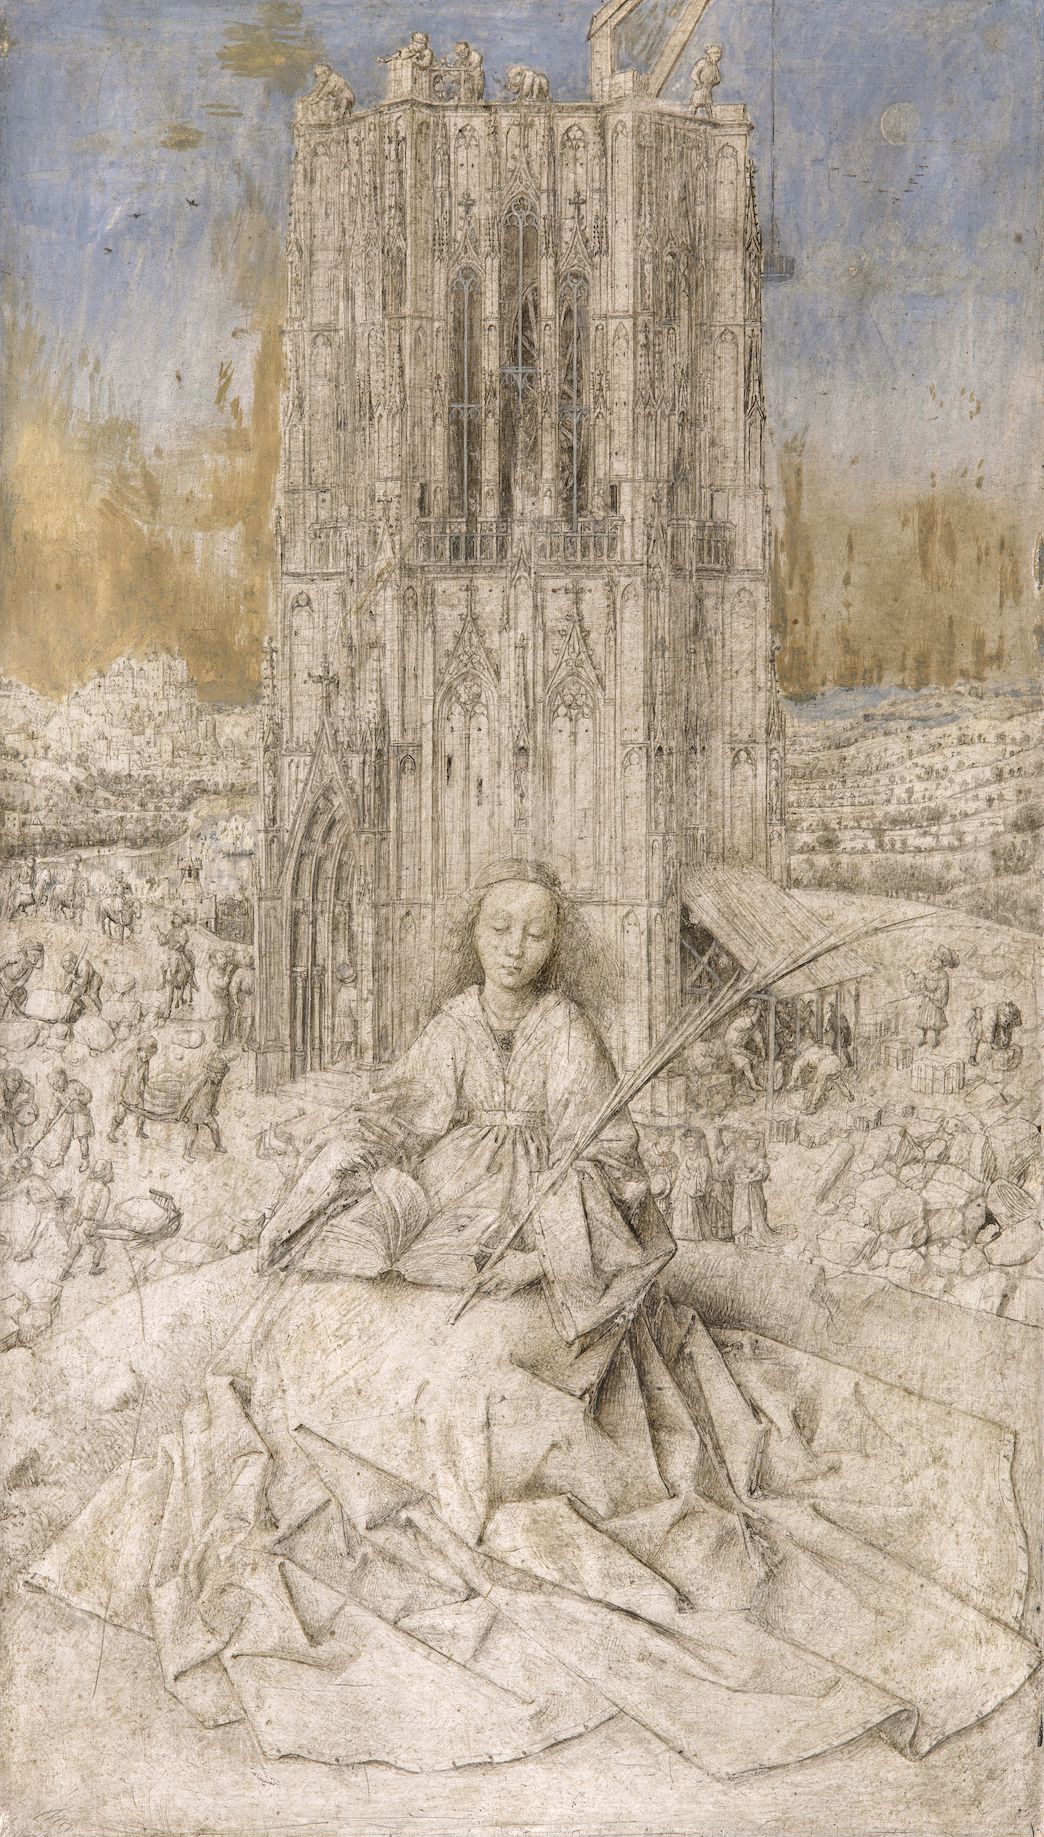 Saint Barbara of Nicomedia by Jan van Eyck - 1437 - 31 x 18 cm Royal Museum of Fine Arts in Antwerp (KMSKA)